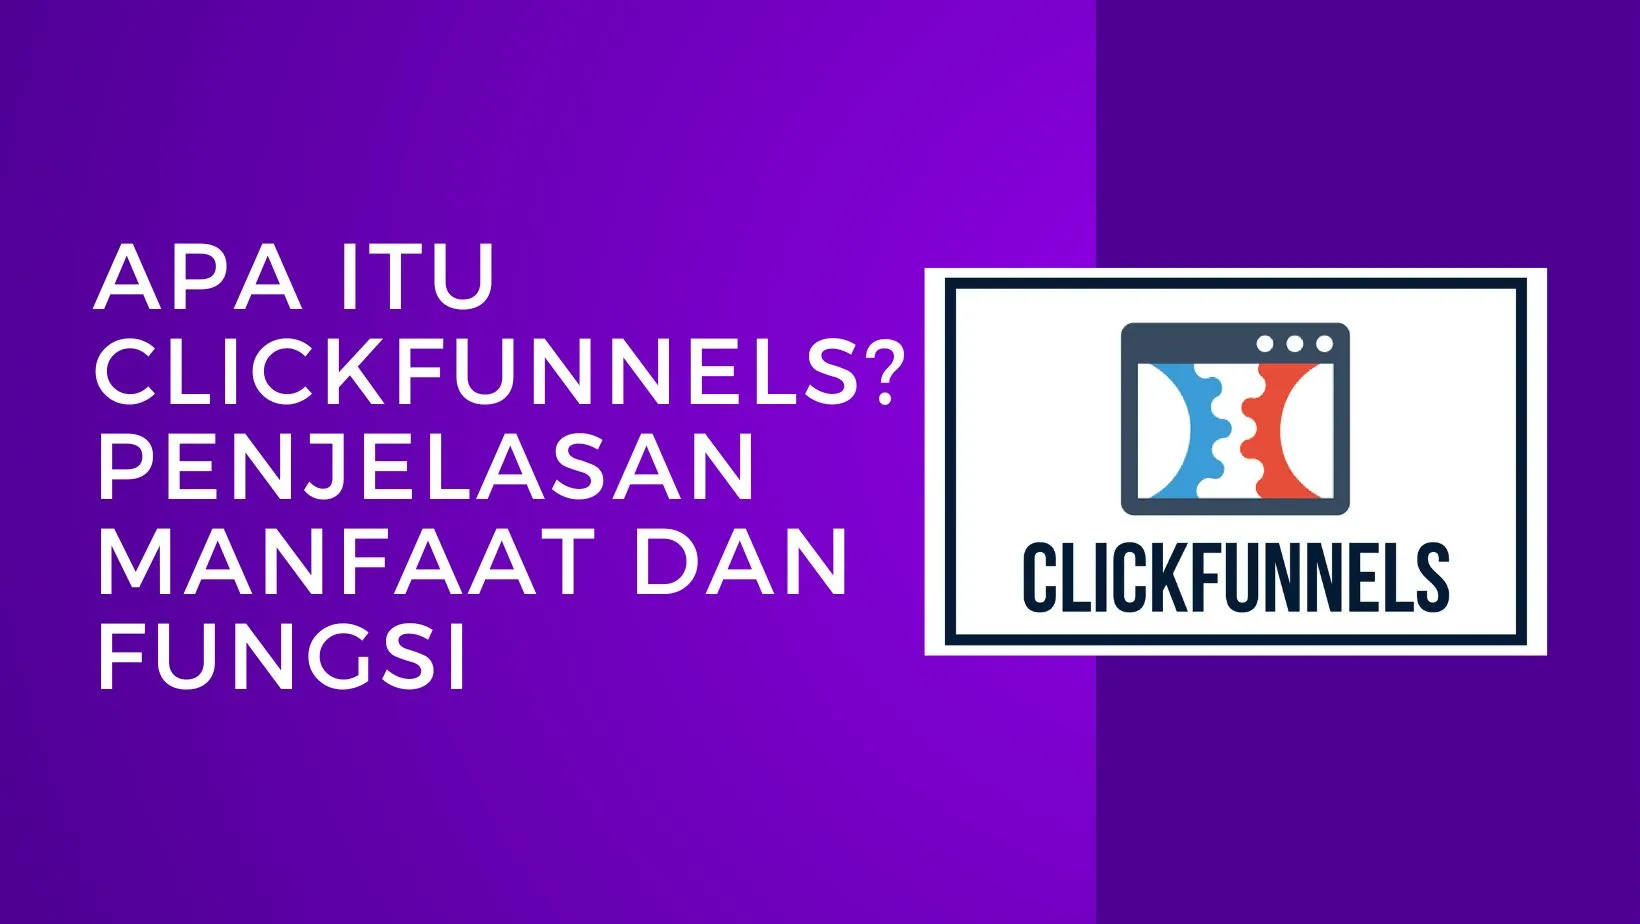 Apa itu ClickFunnels adalahPenjelasan manfaat dan fungsi